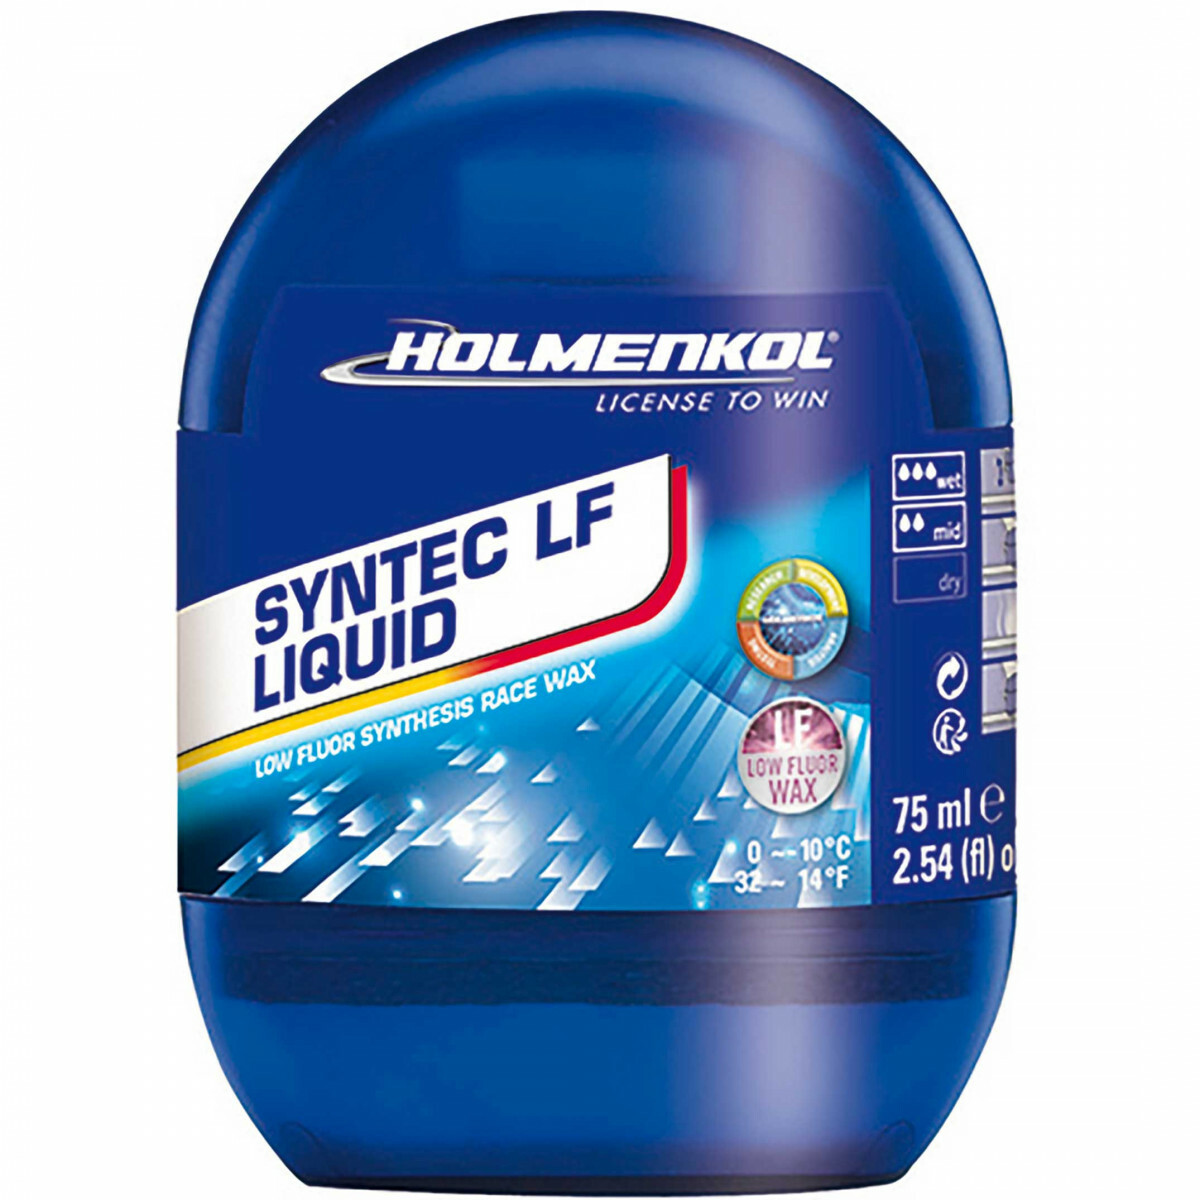 Holmenkol Syntec LF liquid